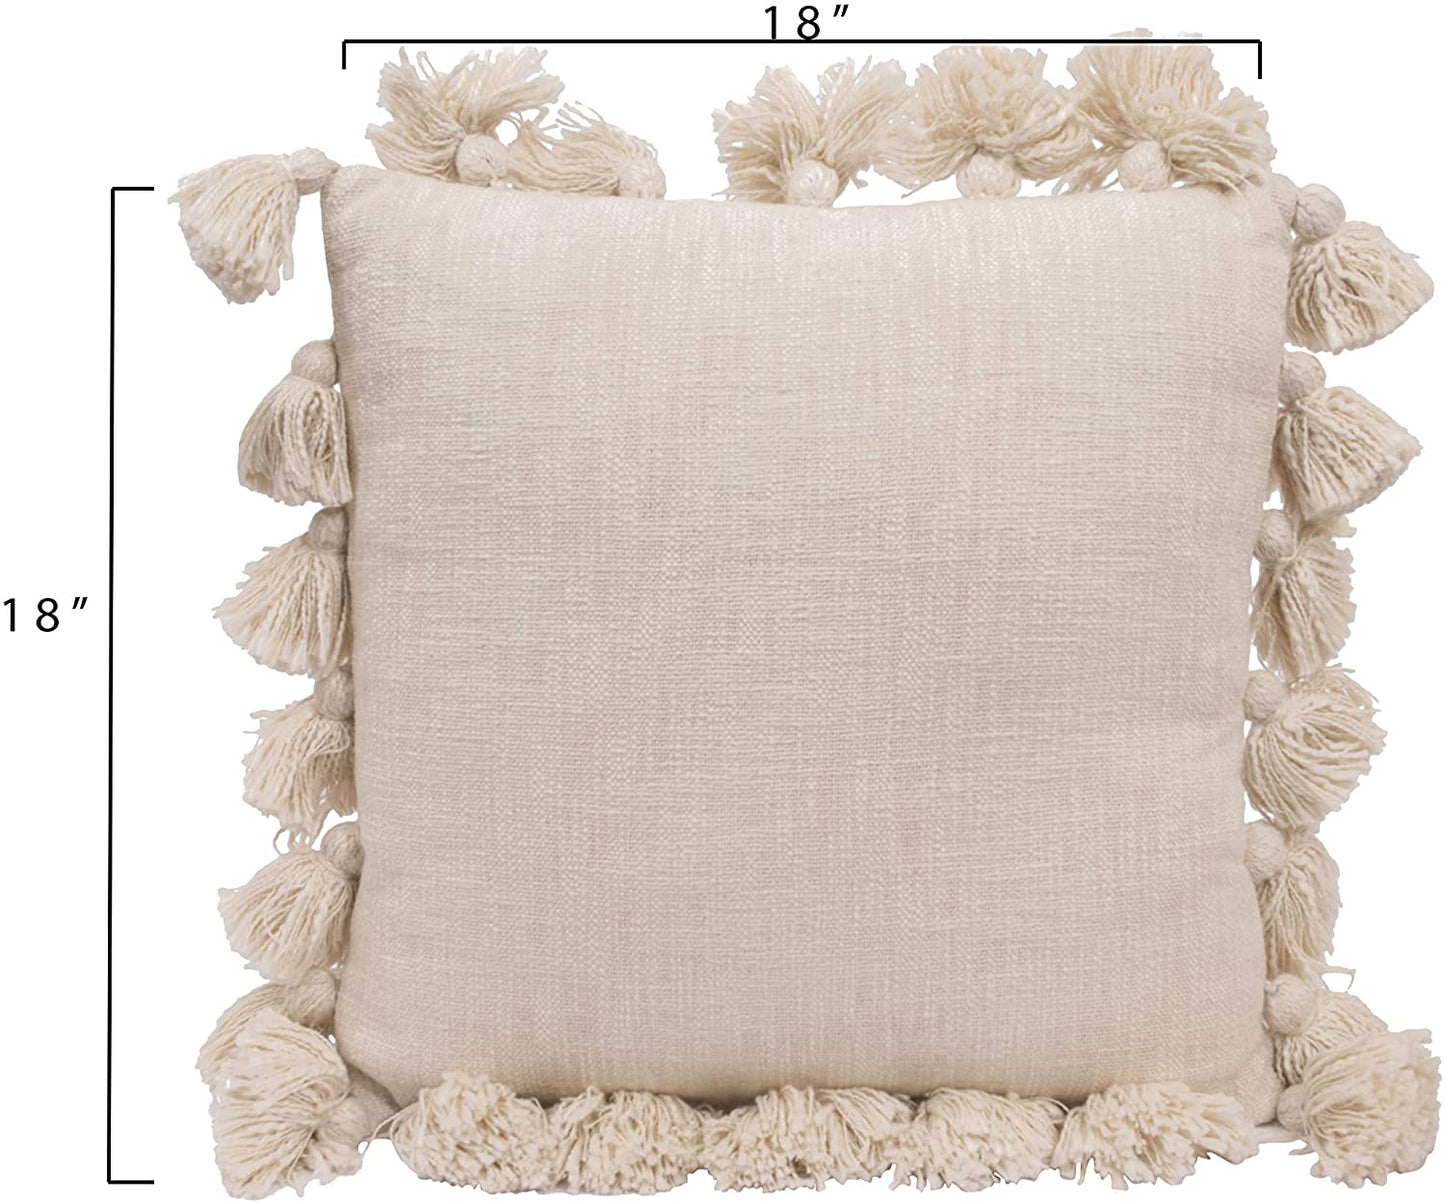 Luxurious Cream Square Cotton Woven Slub Pillow with Tassels - Mellow Monkey